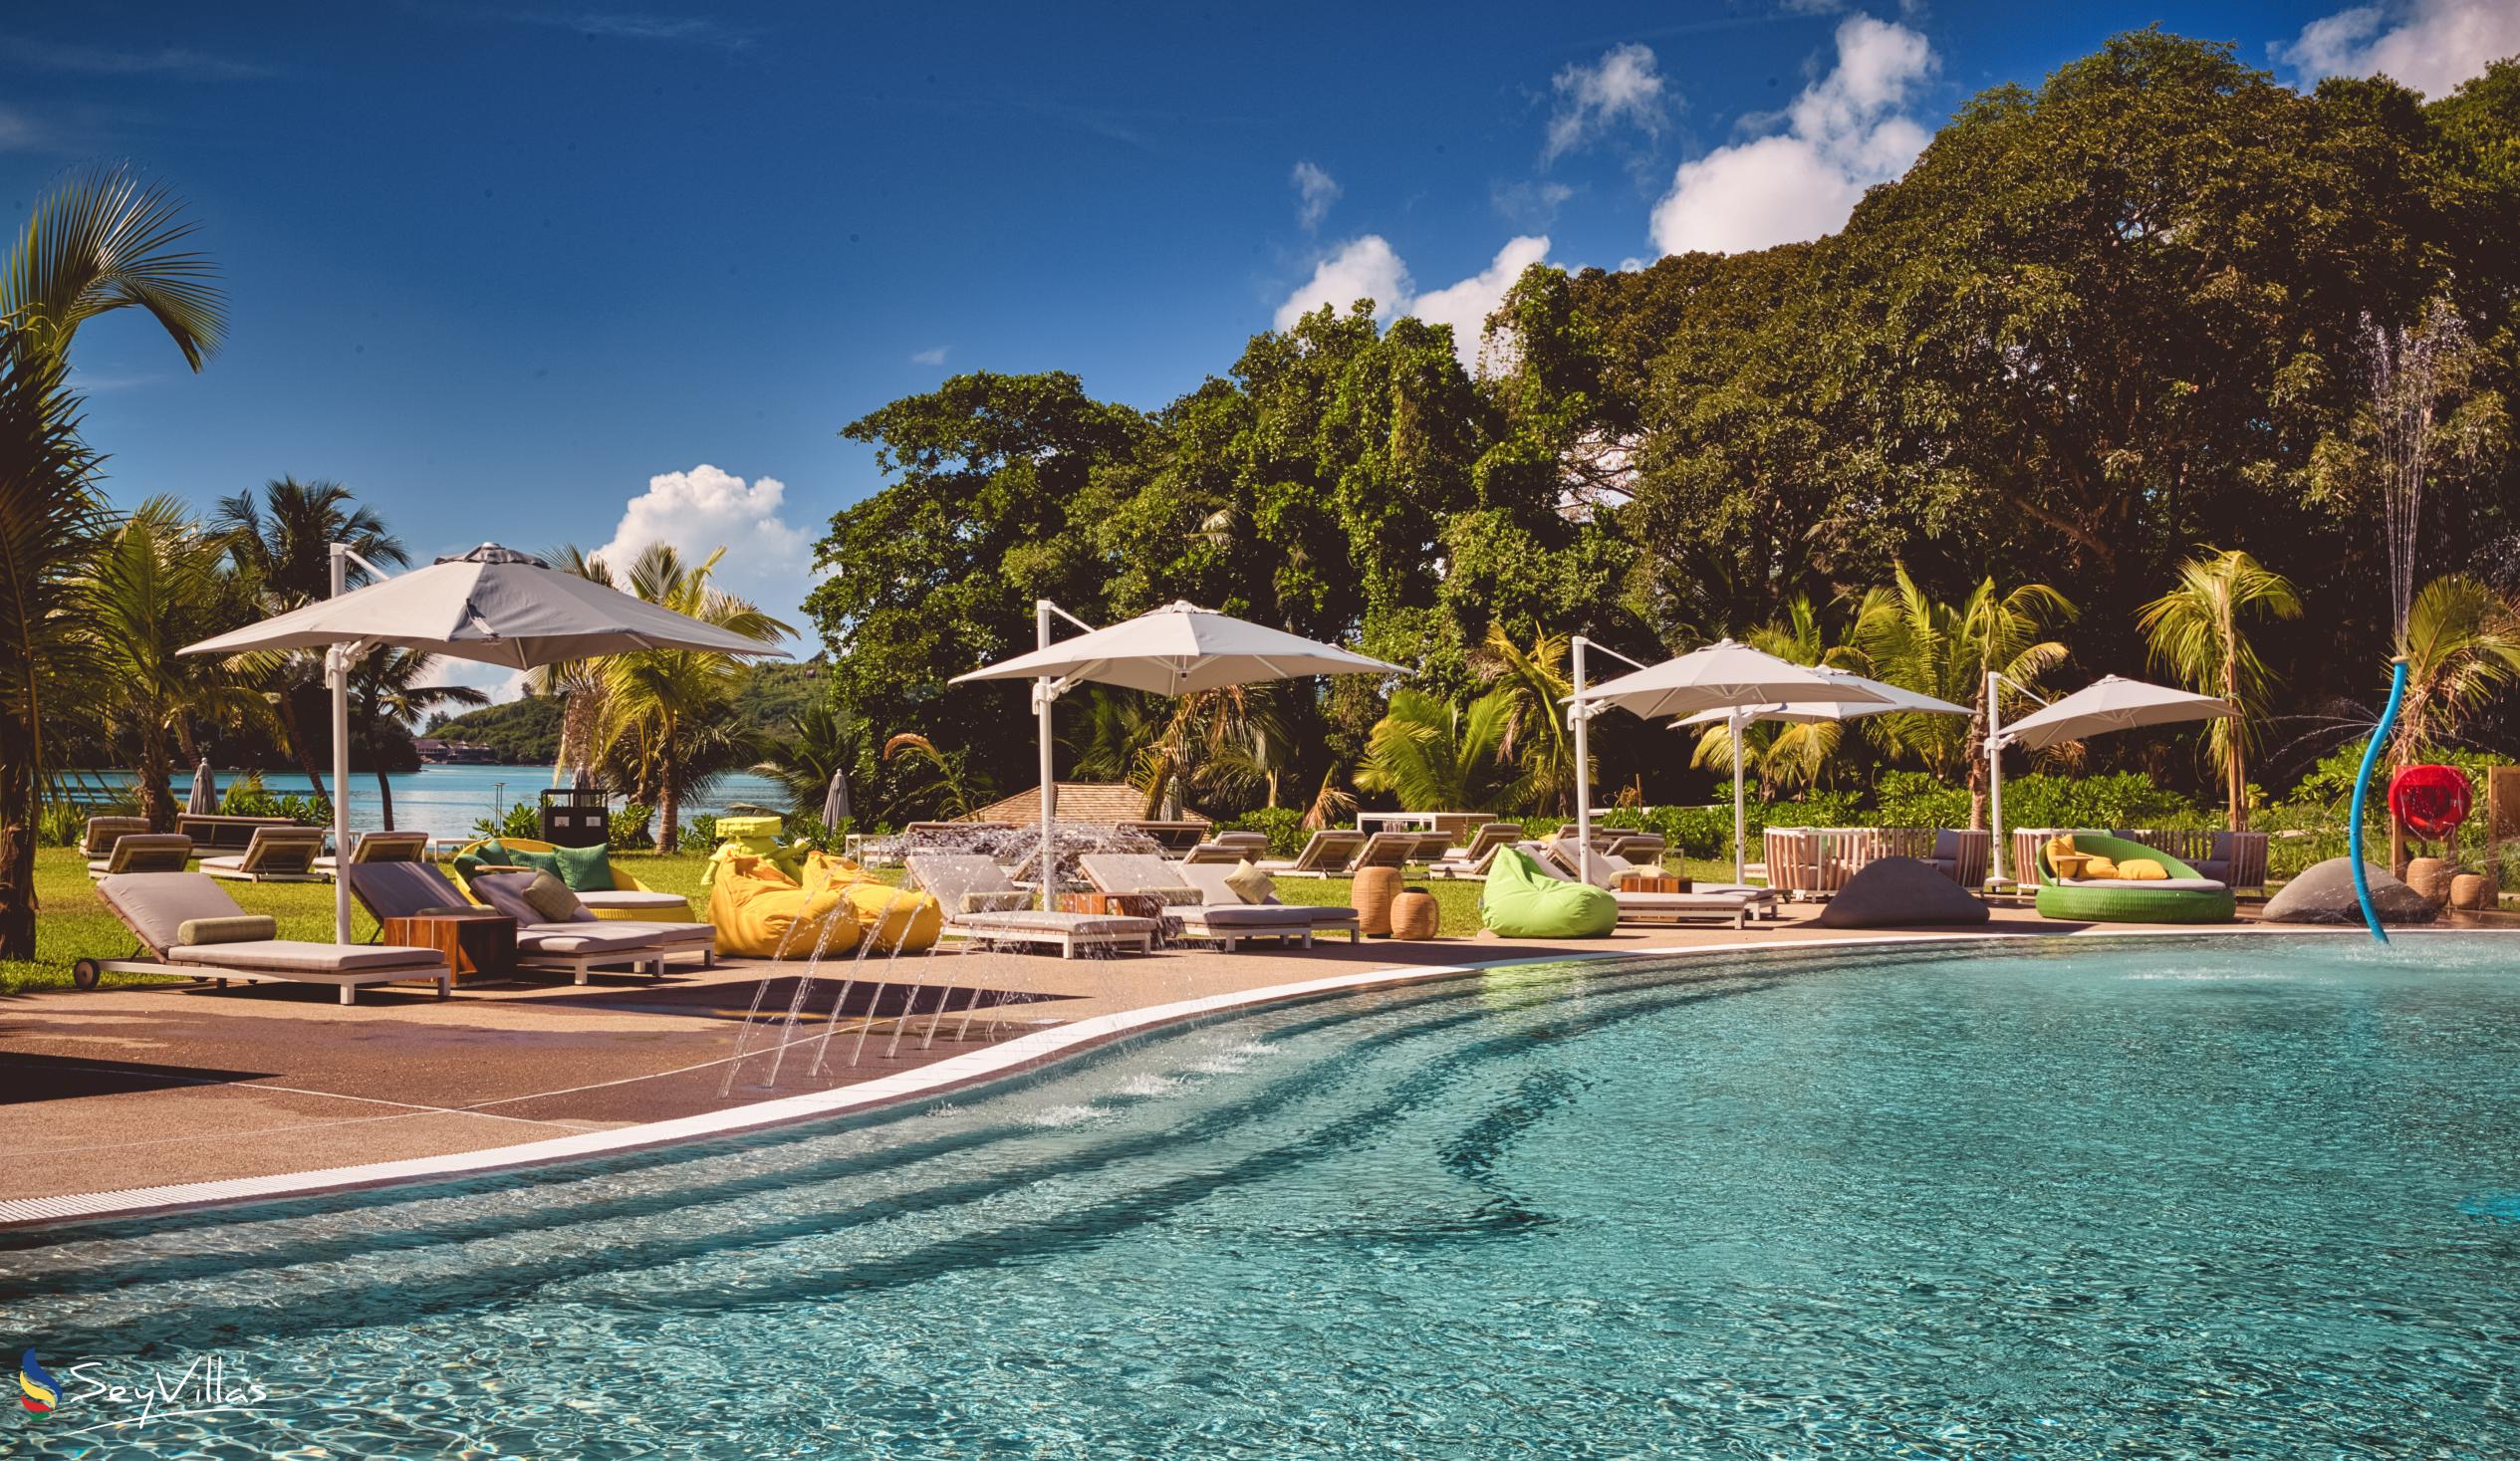 Foto 9: Club Med Seychelles - Aussenbereich - Saint Anne (Seychellen)